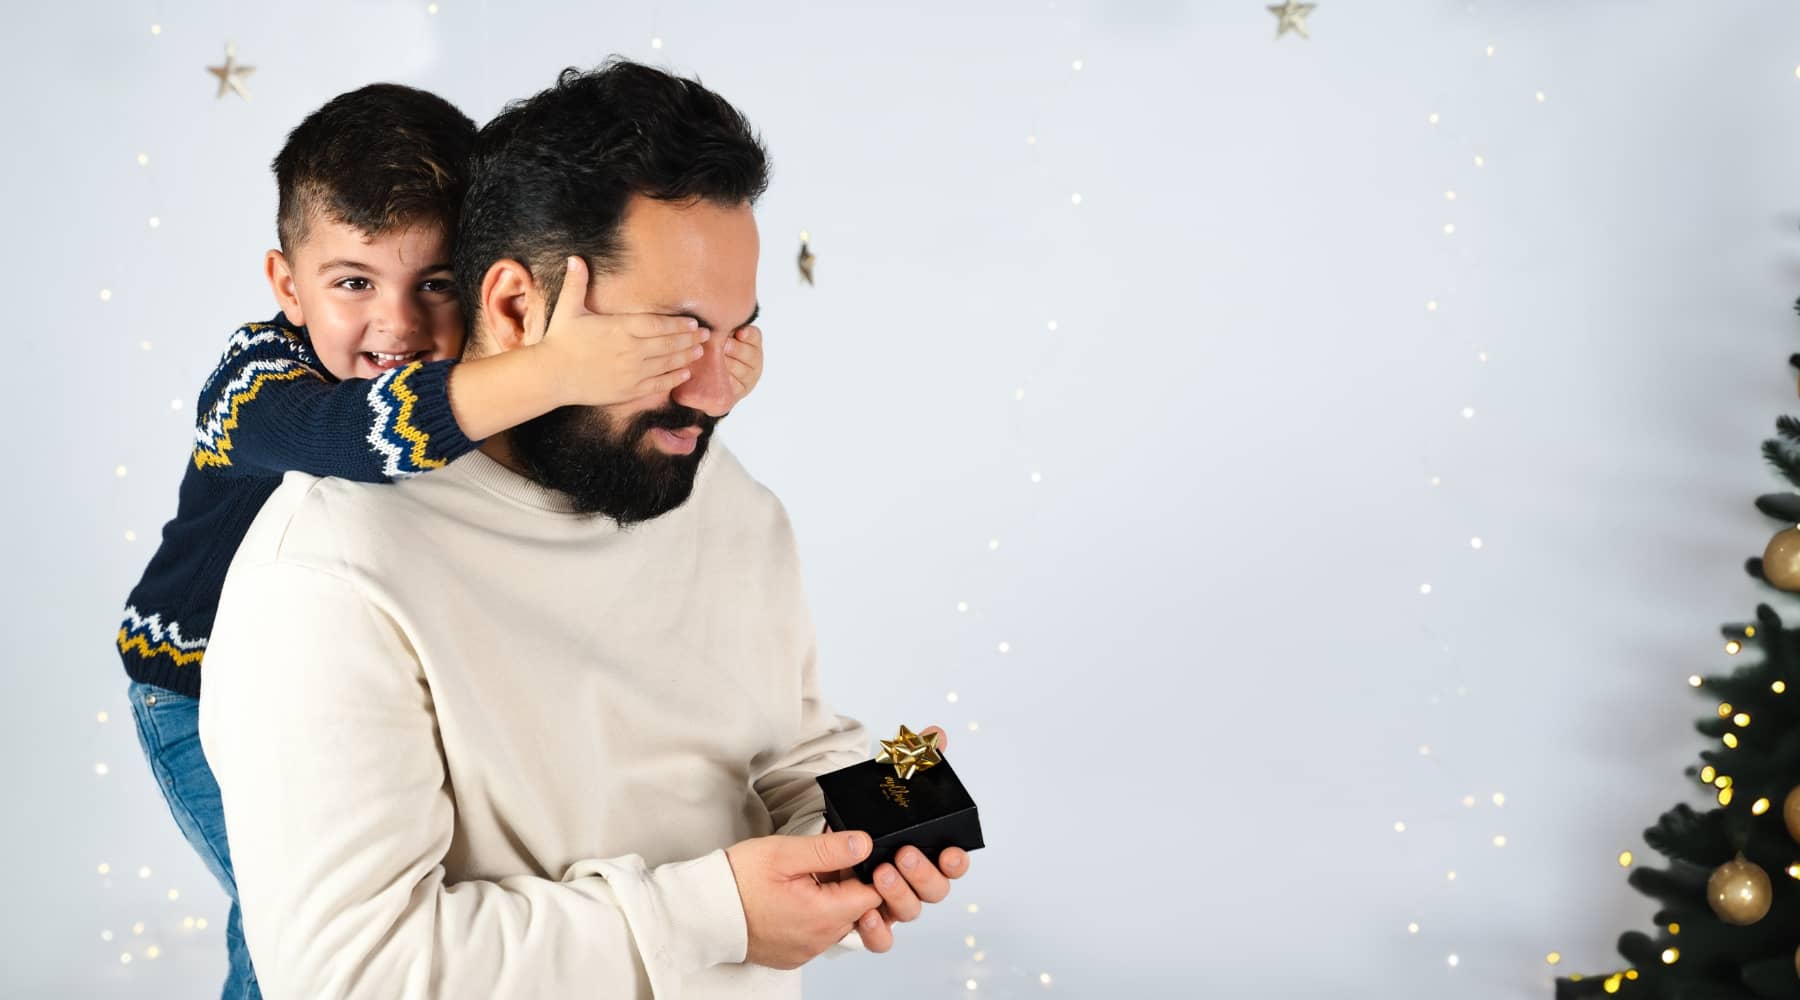 Einzigartige Weihnachtsgeschenke für Männer und Väter